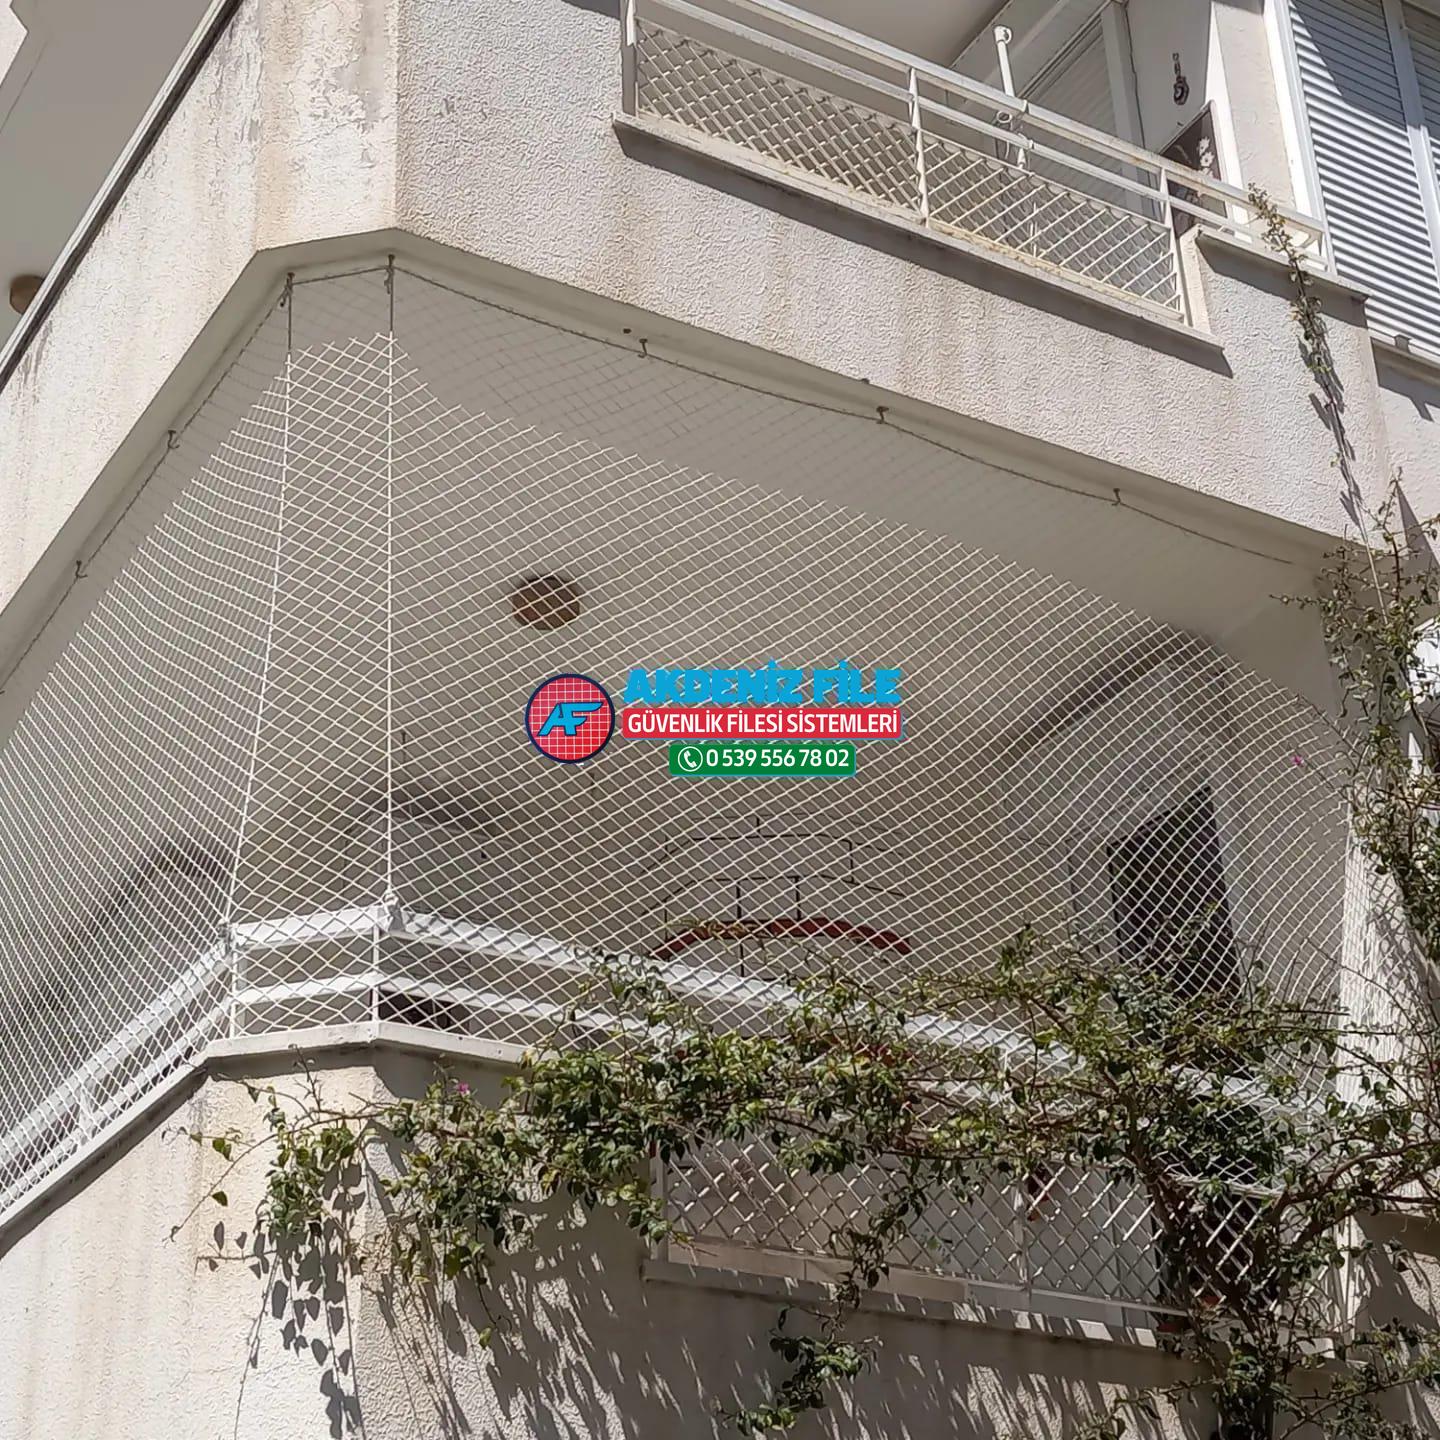 Adana  Balkon için file, Balkon için güvenlik filesi 0539 556 78 02